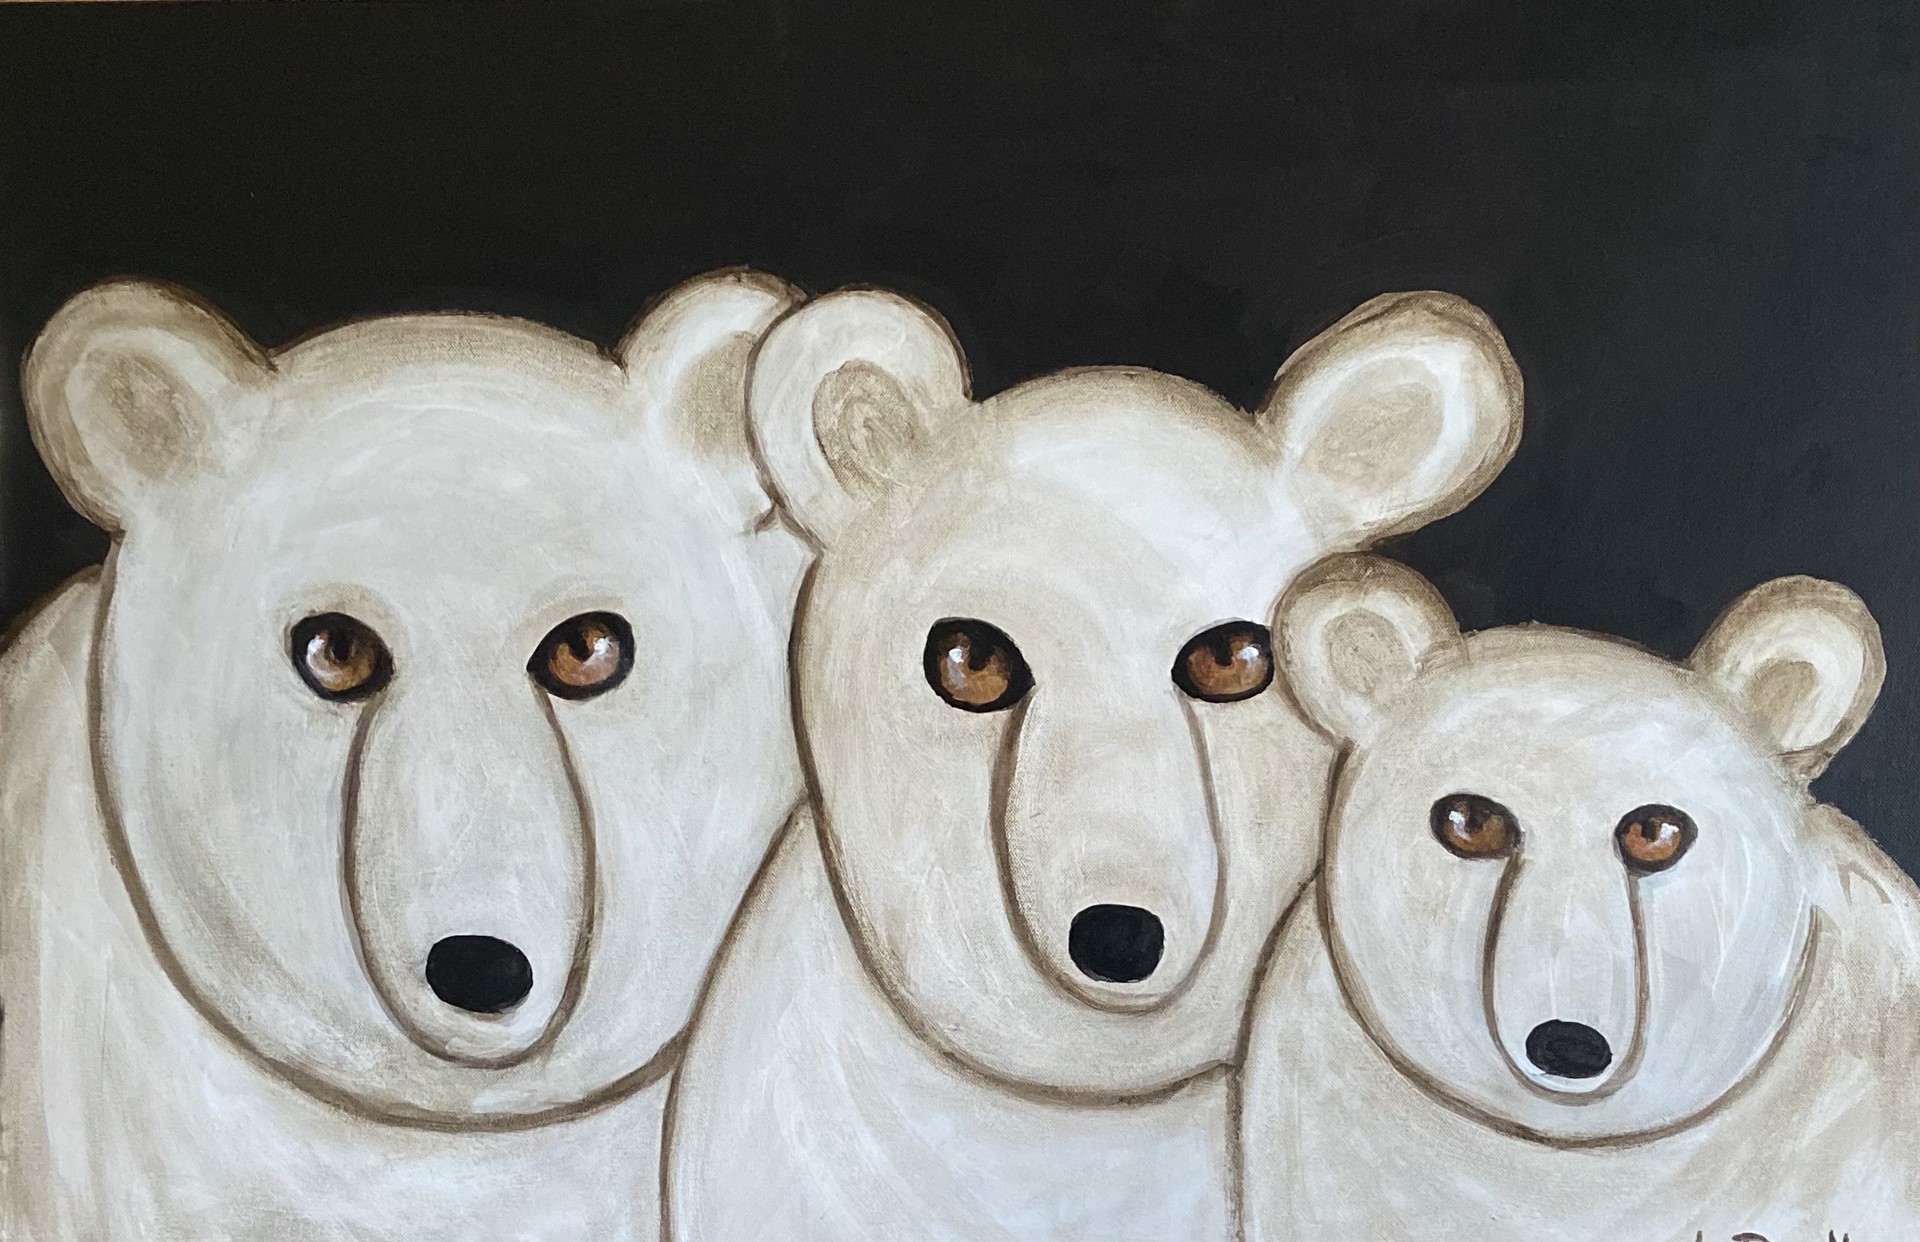 FAMILY: The Three Bears by Carole LaRoche